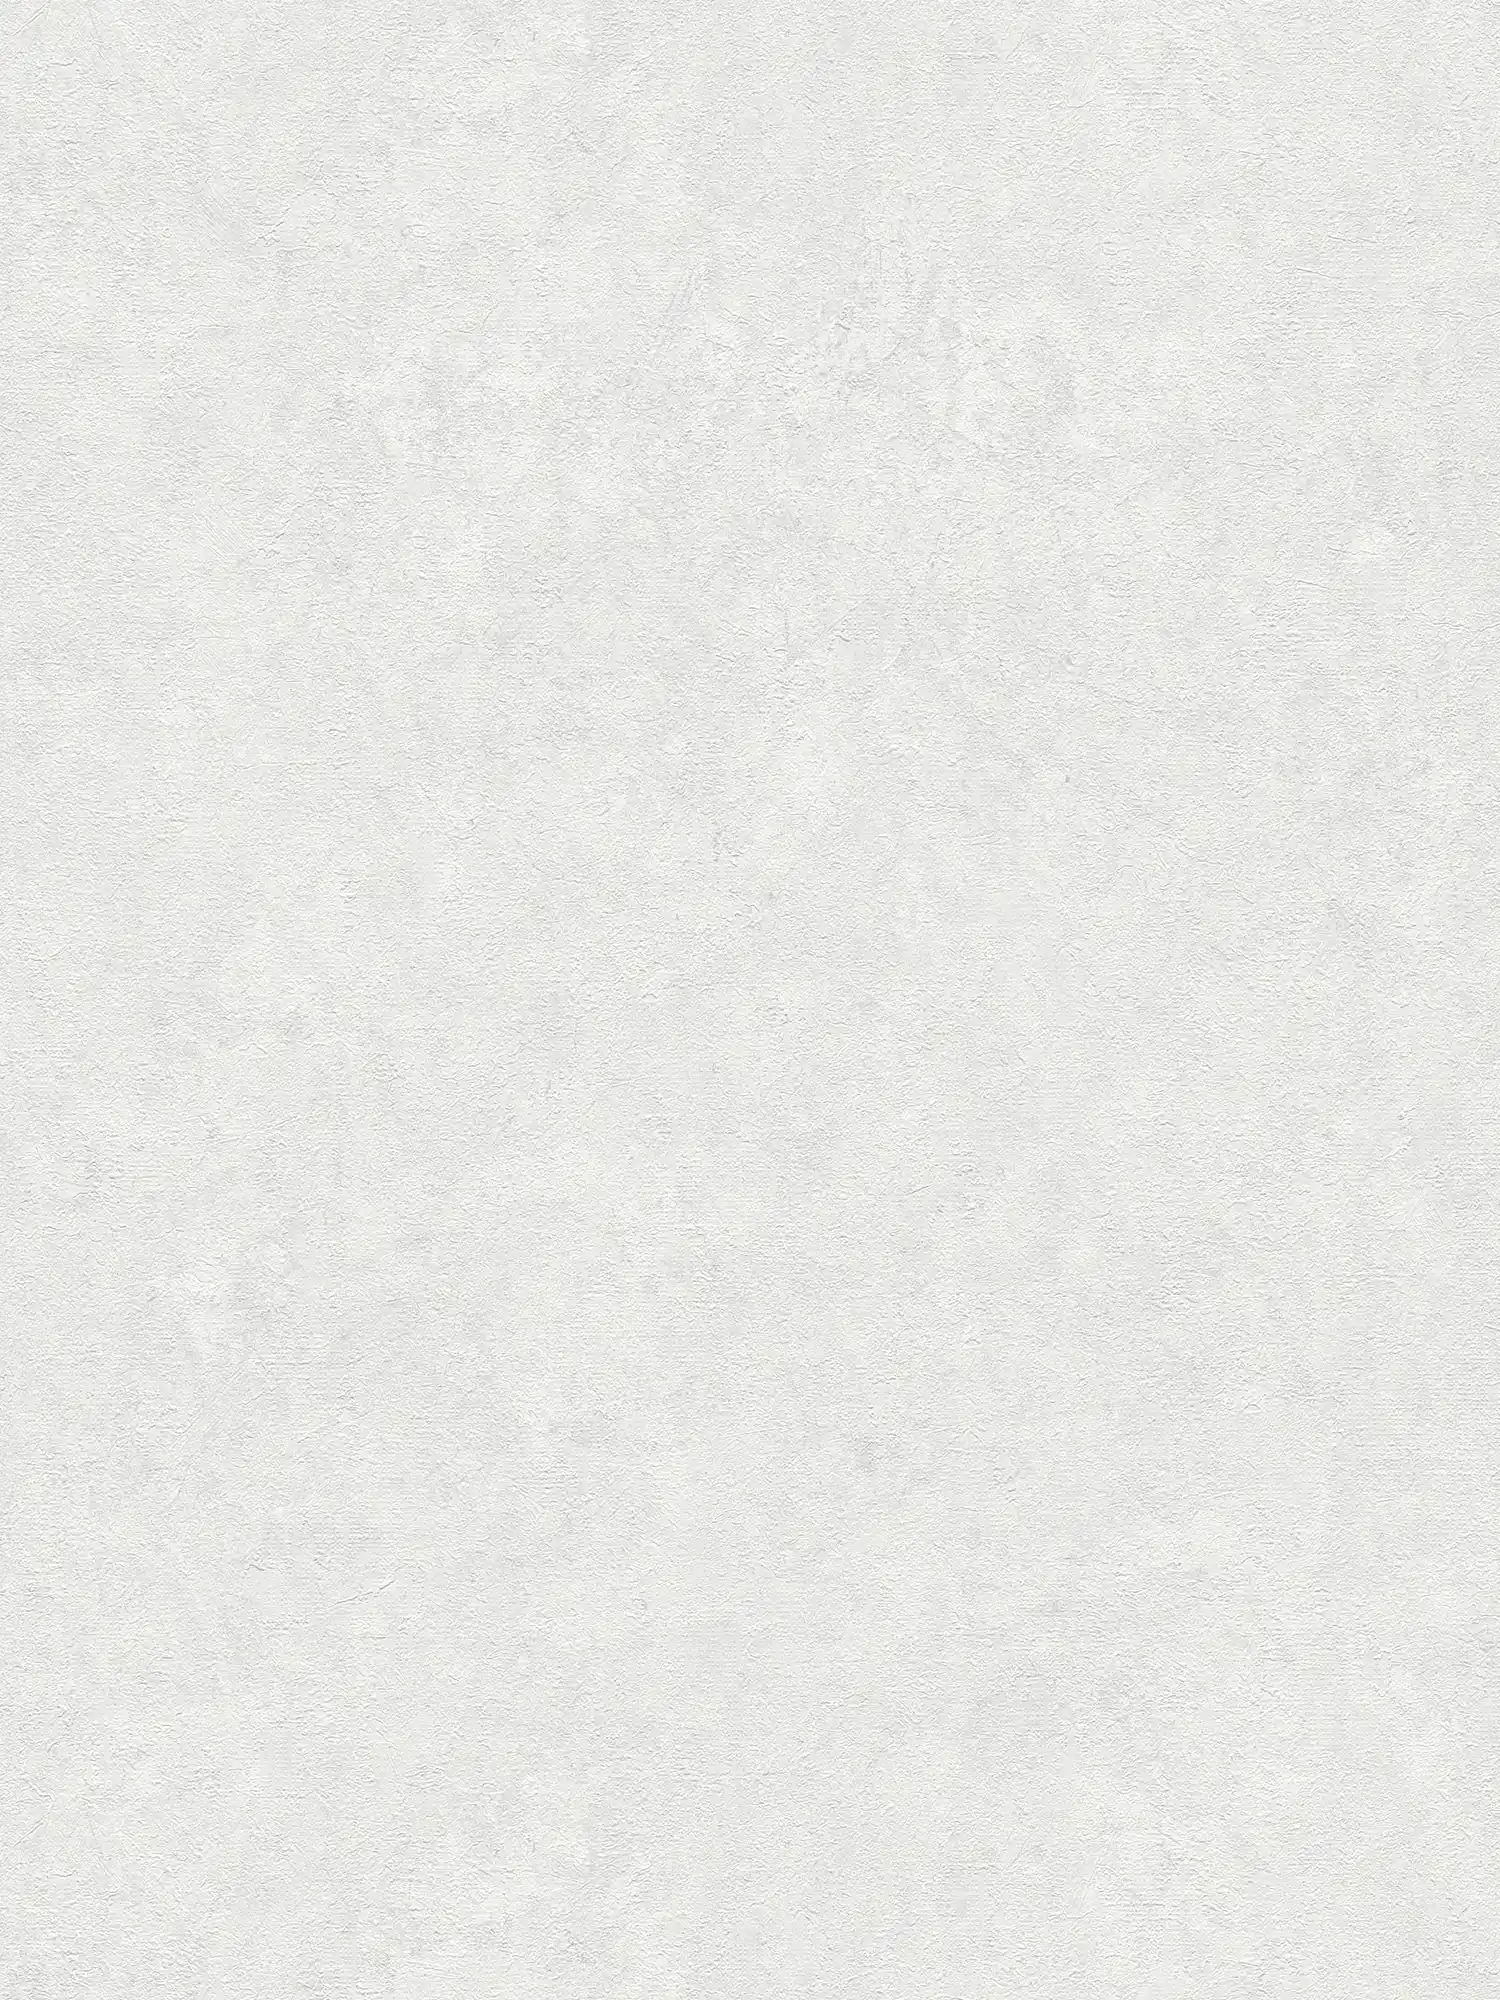 Carta da parati unitaria con motivo strutturato in tonalità tenui - bianco, grigio
